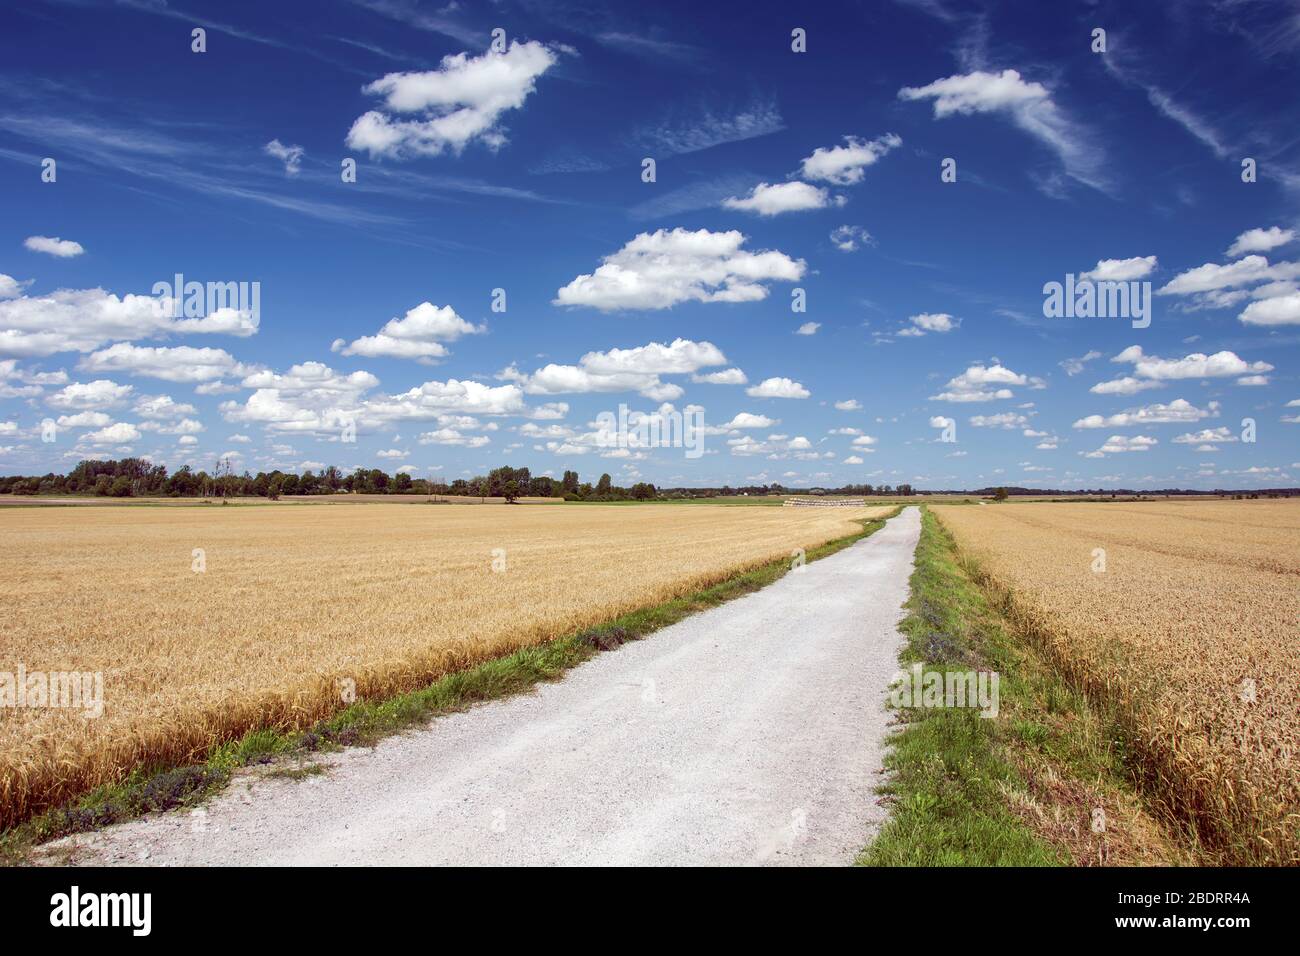 Une route de gravier à travers les champs avec grain, horizon et nuages blancs sur un ciel bleu, vue d'été Banque D'Images